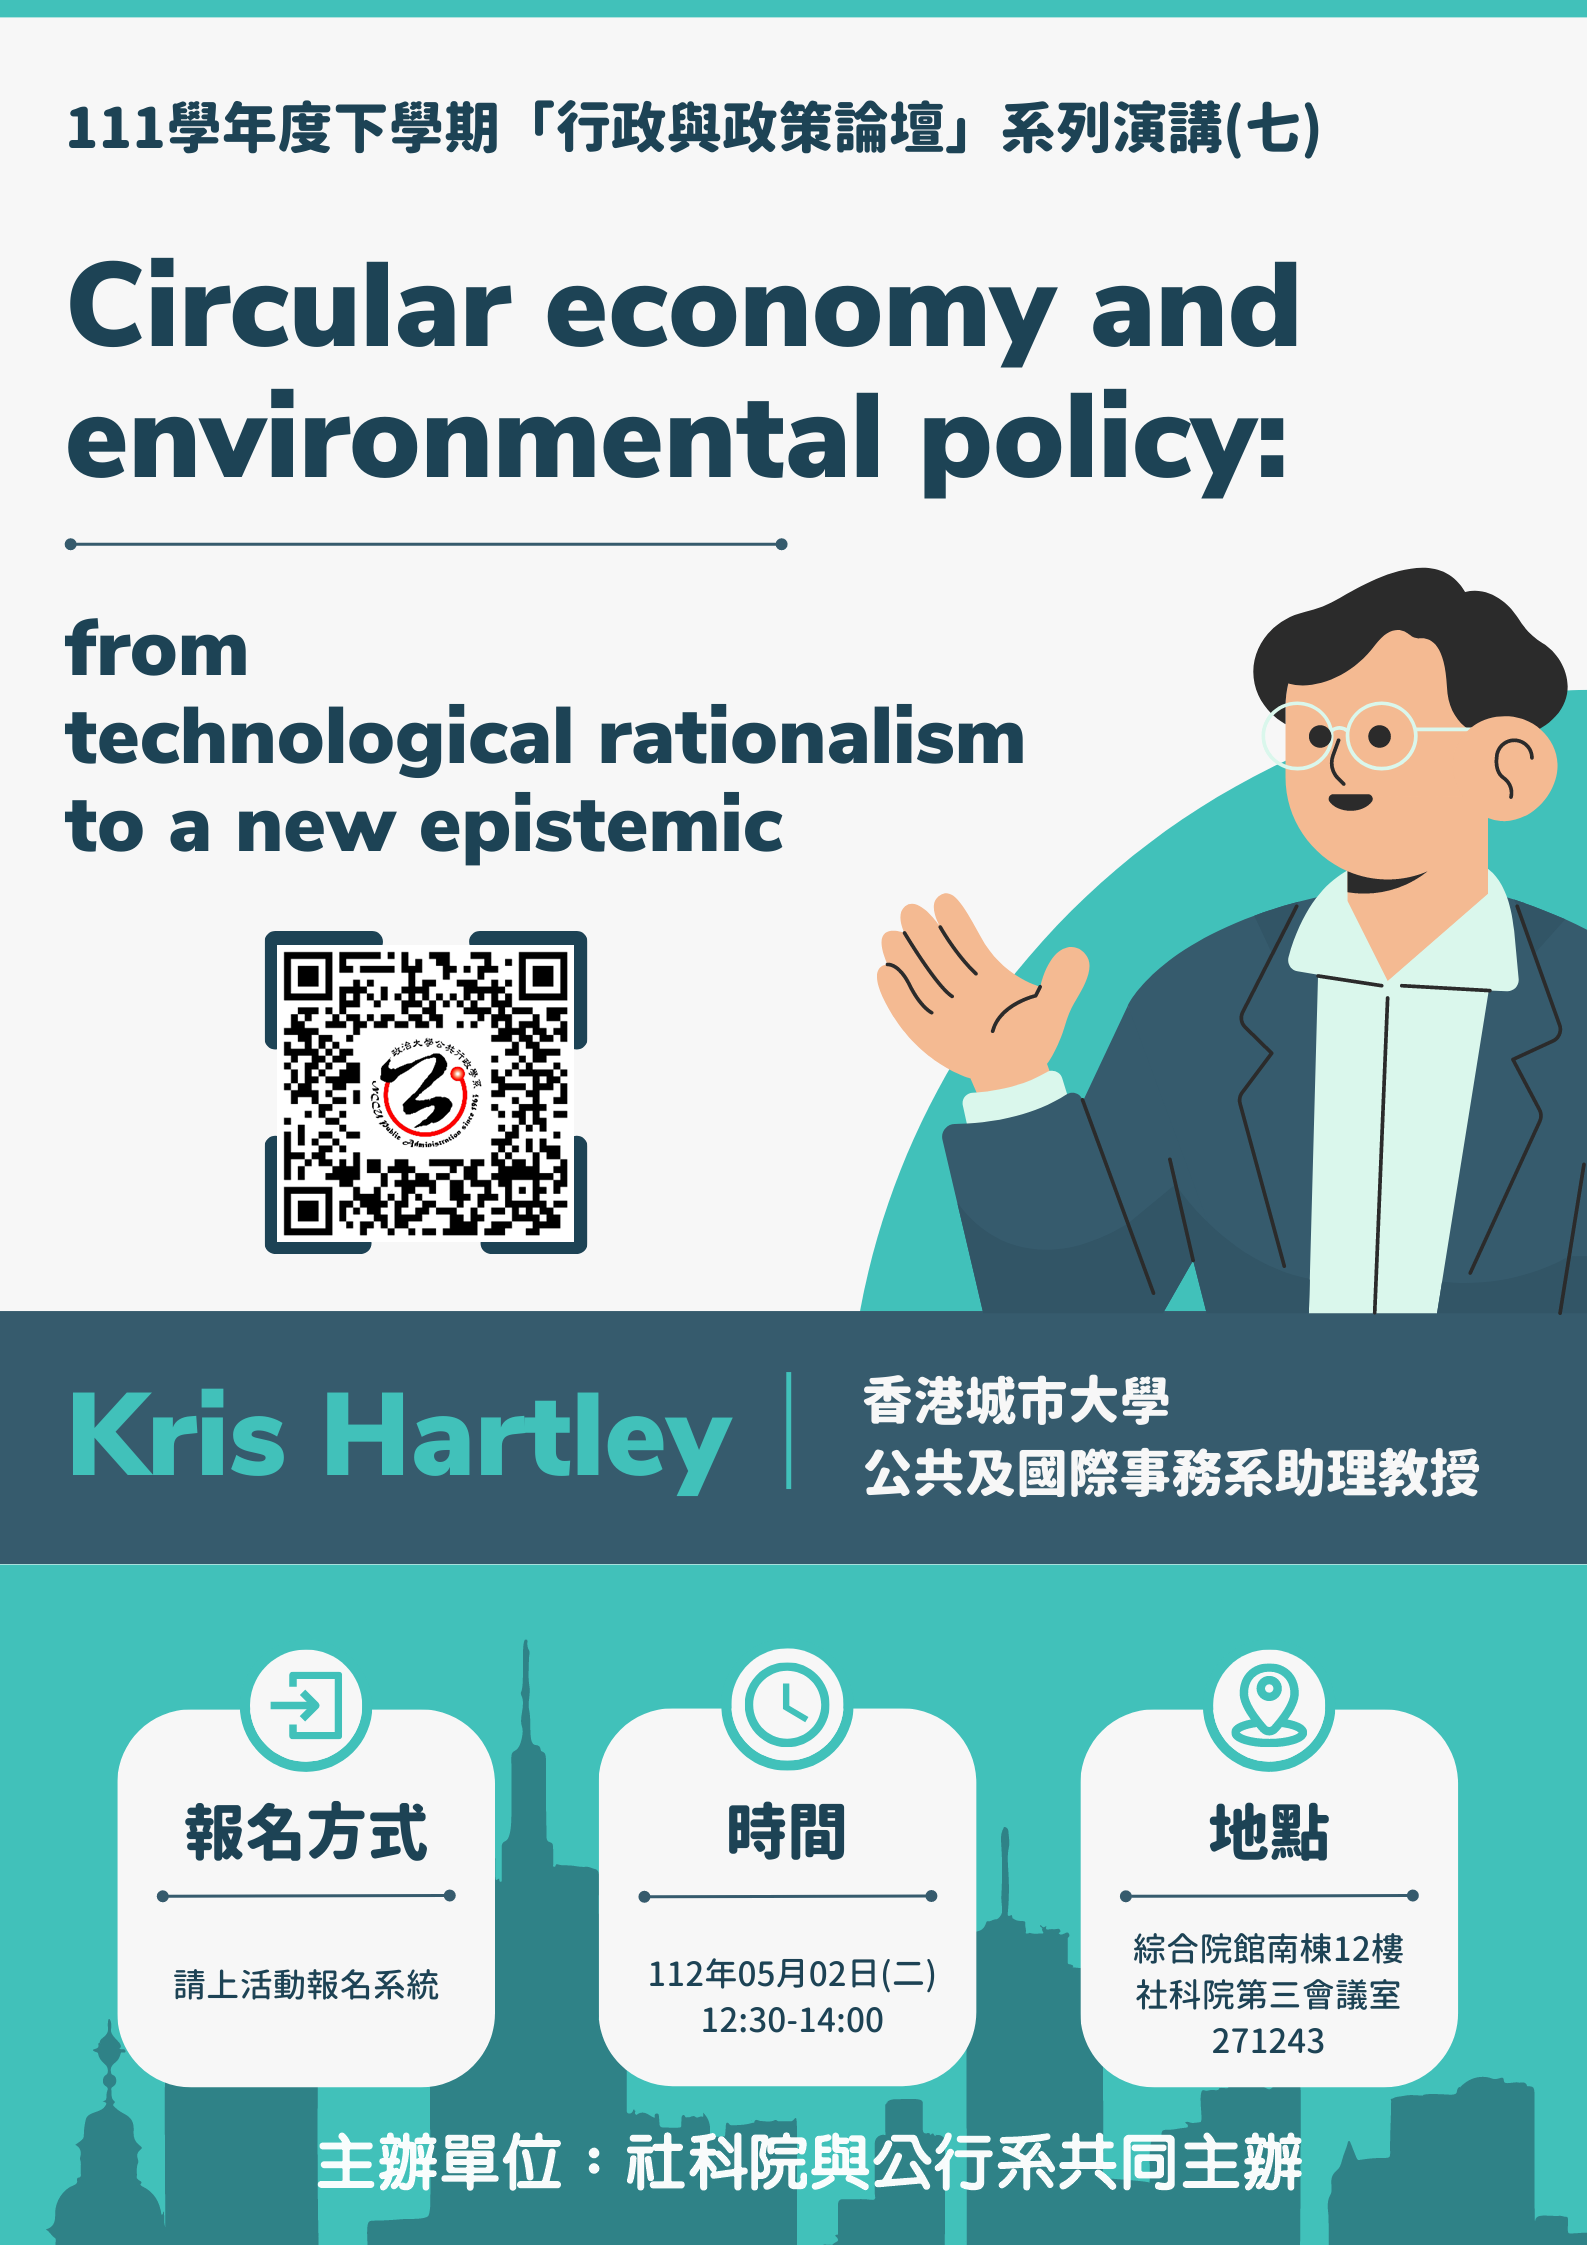 【學術】「行政與政策論壇」系列演講(七) 主講人：Dr. Kris Hartley